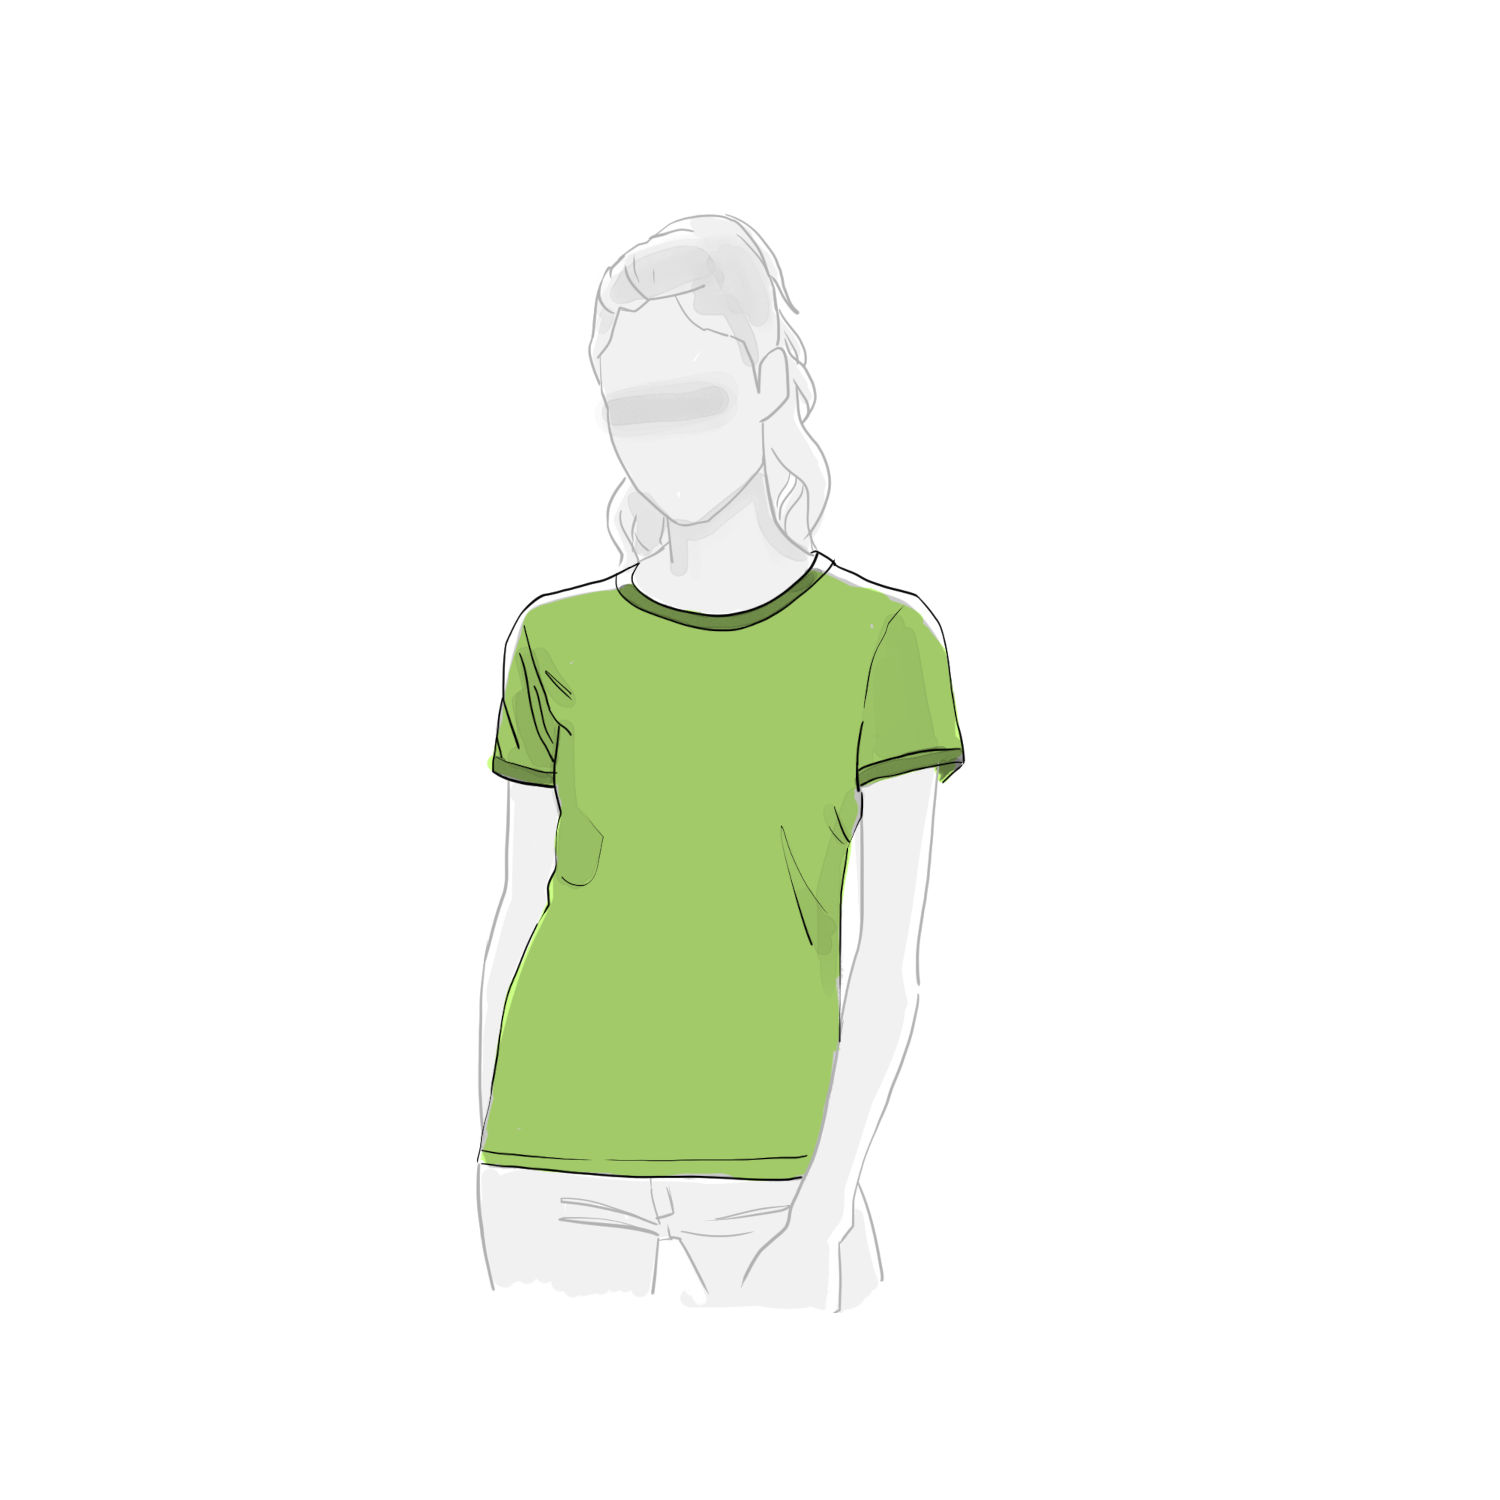  Artikelbild 1 des Artikels “The Evergreen Hemp T-Shirt “